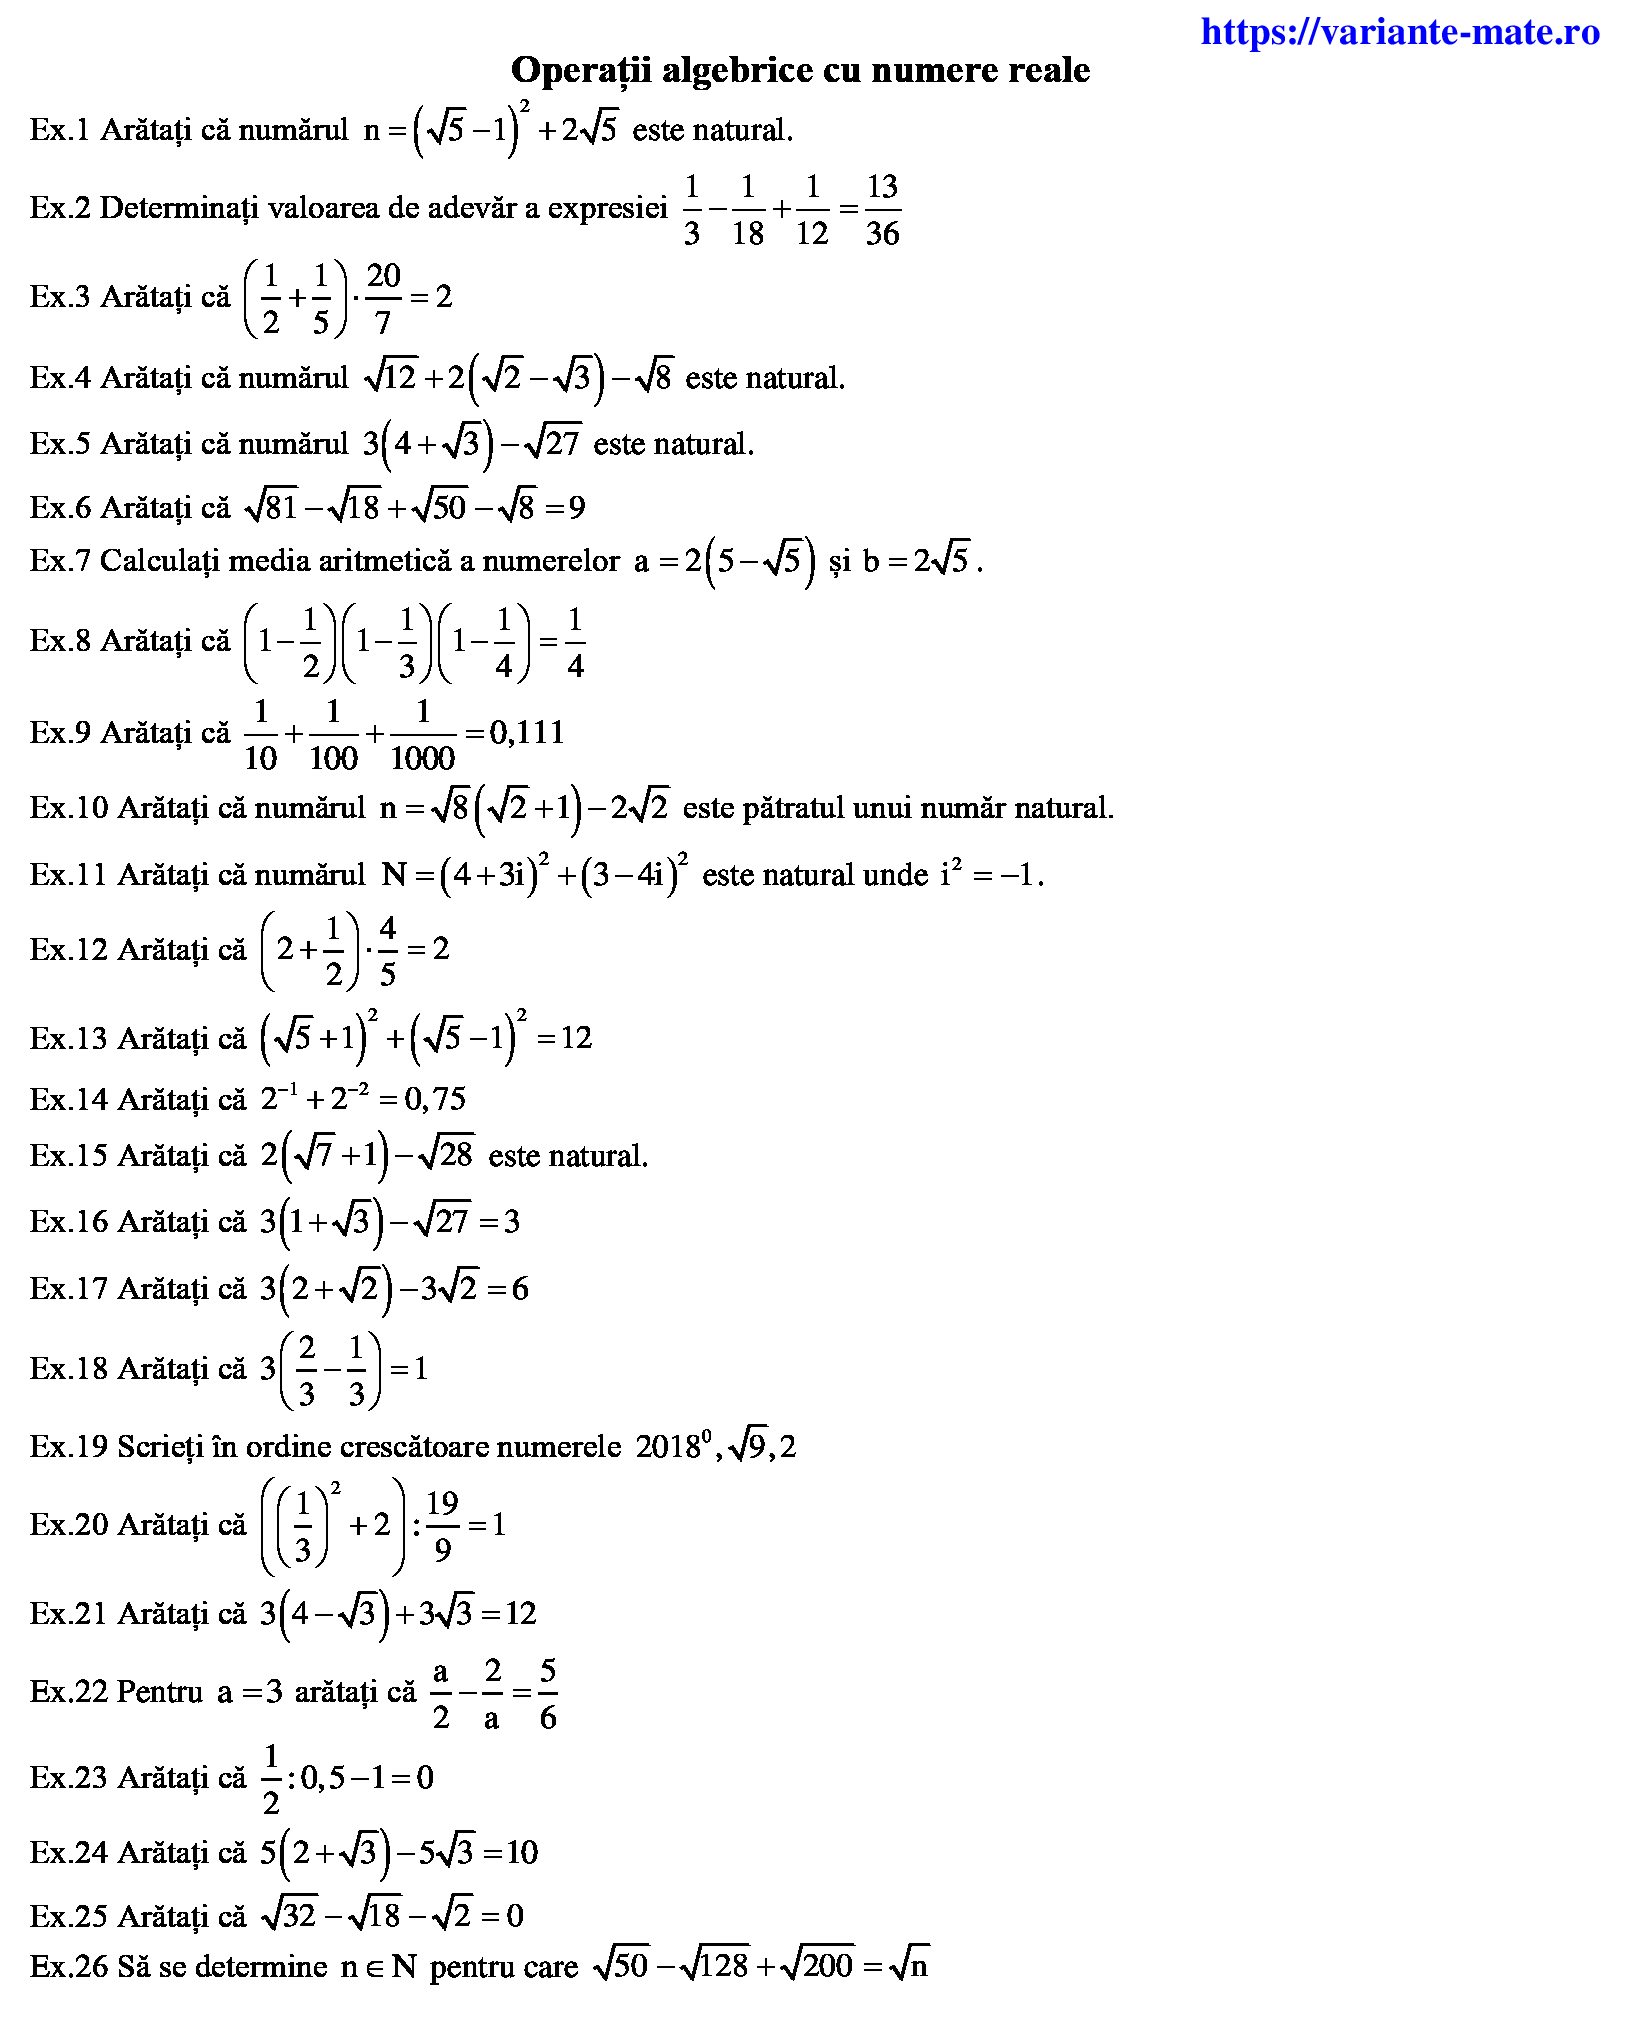 Operatii algebrice cu numere reale din variantele de bac